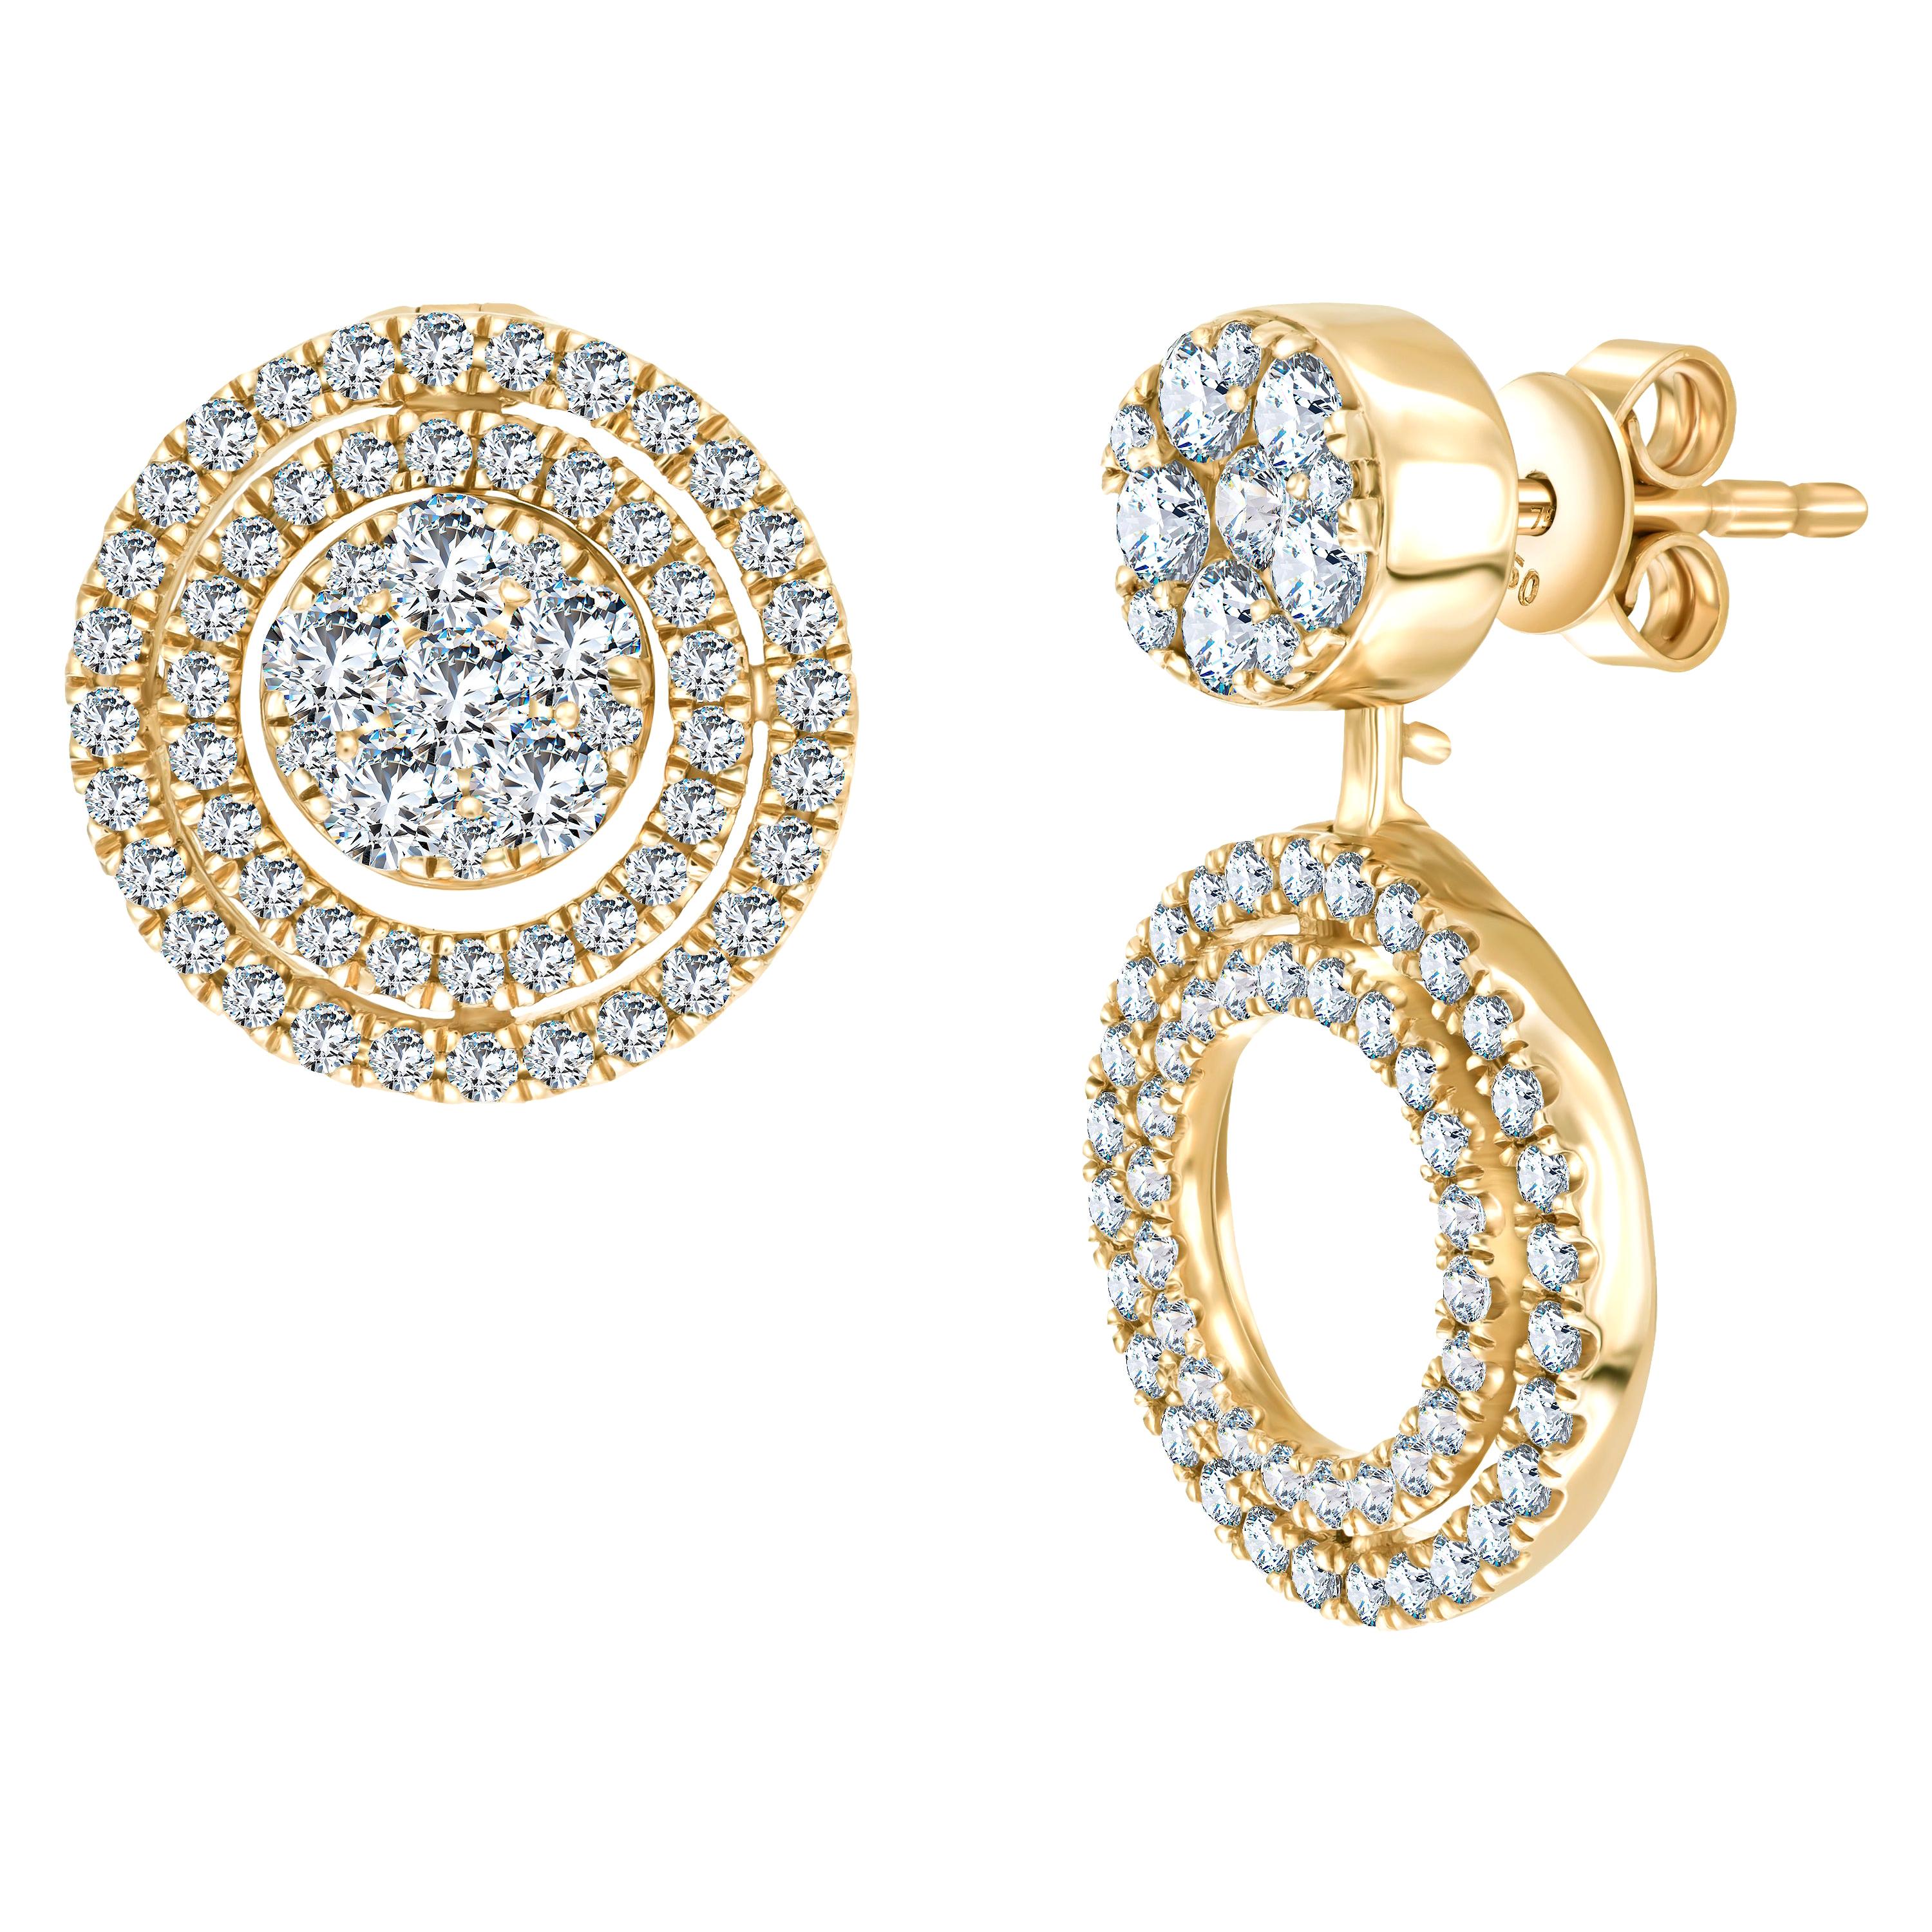 Maßgefertigte 1,00 Karat runde Brillant-Diamant-Cluster-Ohrringe aus 18 Karat Gold